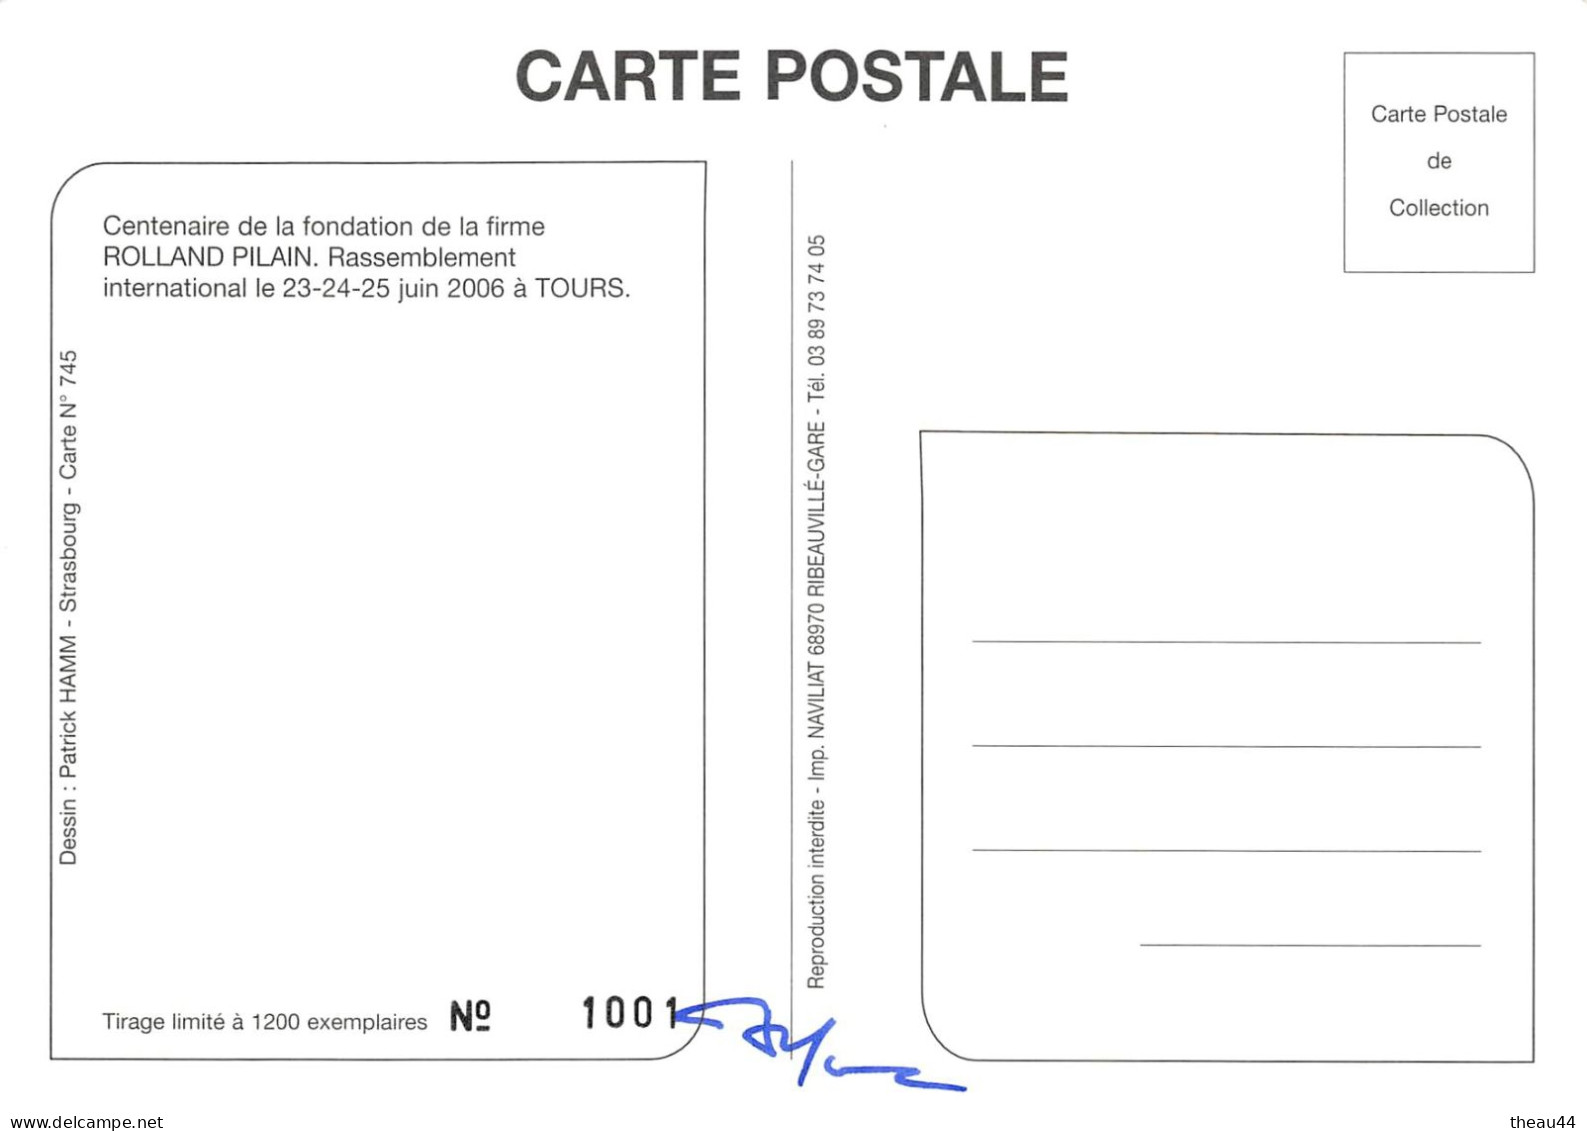 Lot de 6 Cartes de l'Illustrateur  " Patrick HAMM " - 5 cp dédicacées - Strasbourg, Beaune, Tours, Chateaux de la Loire